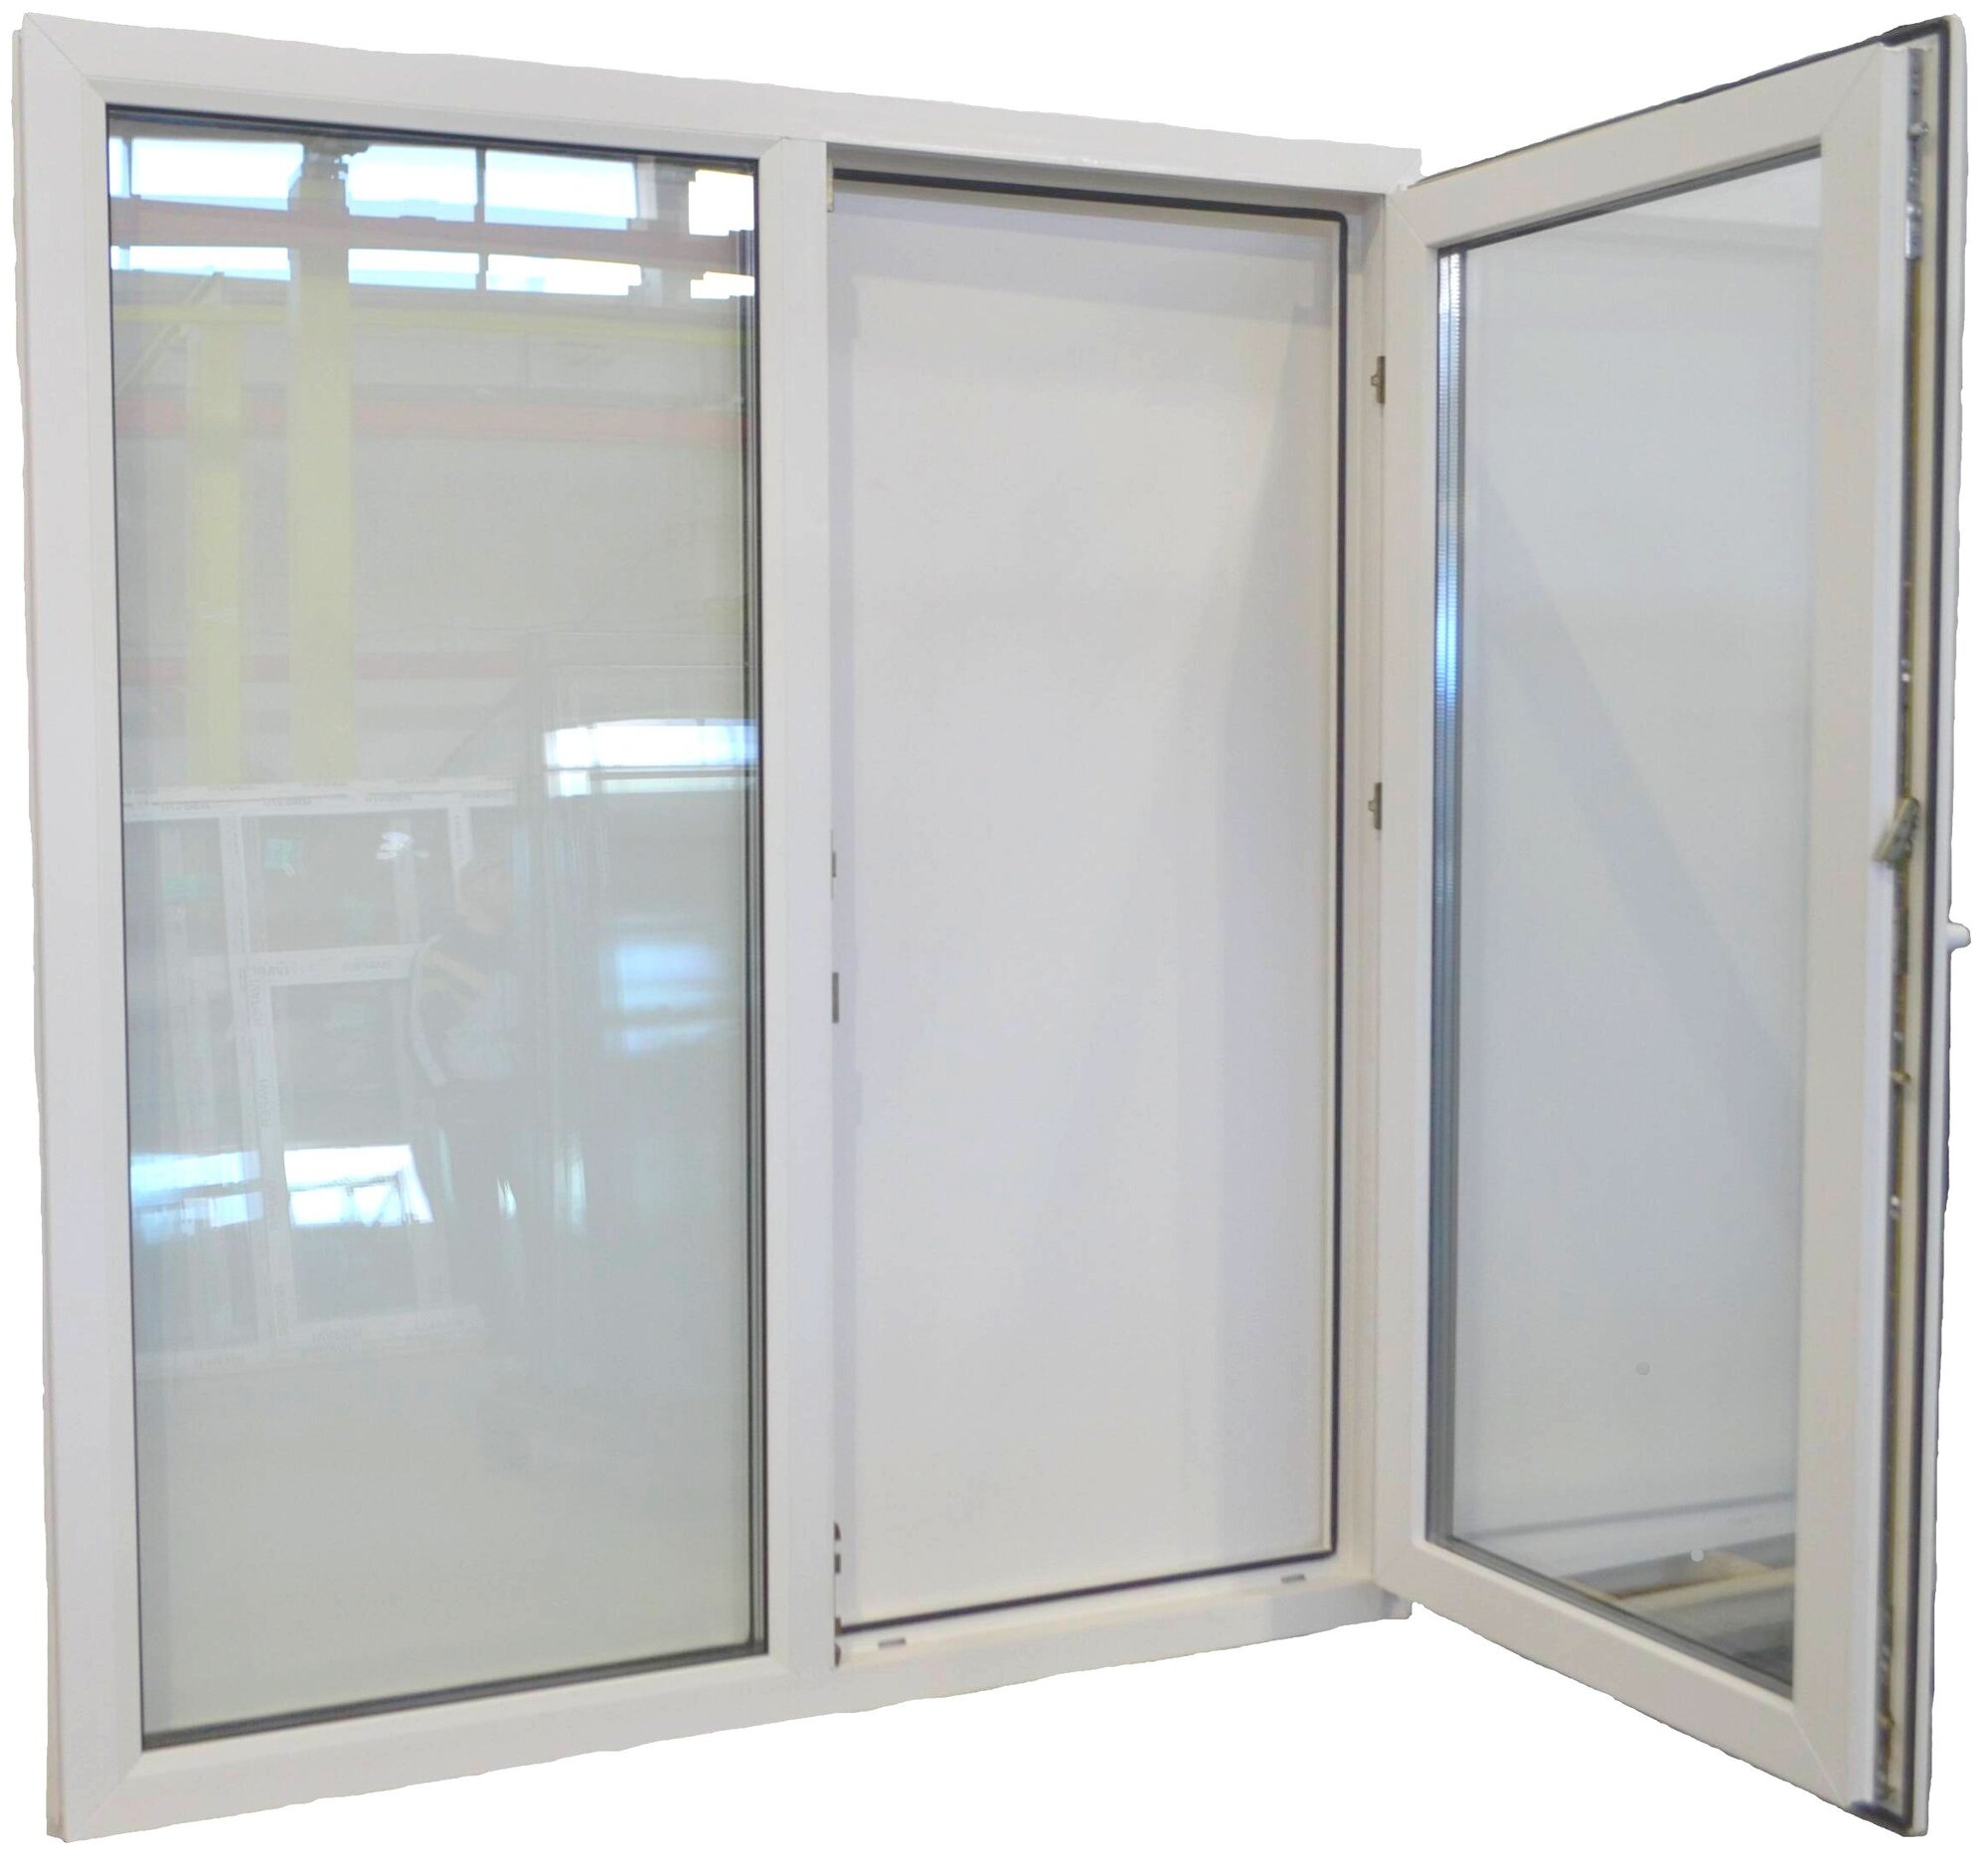 Пластиковое окно ПВХ (1300-1400) поворотно-откидная правая створка, стеклопакет 32мм (3 стекла)